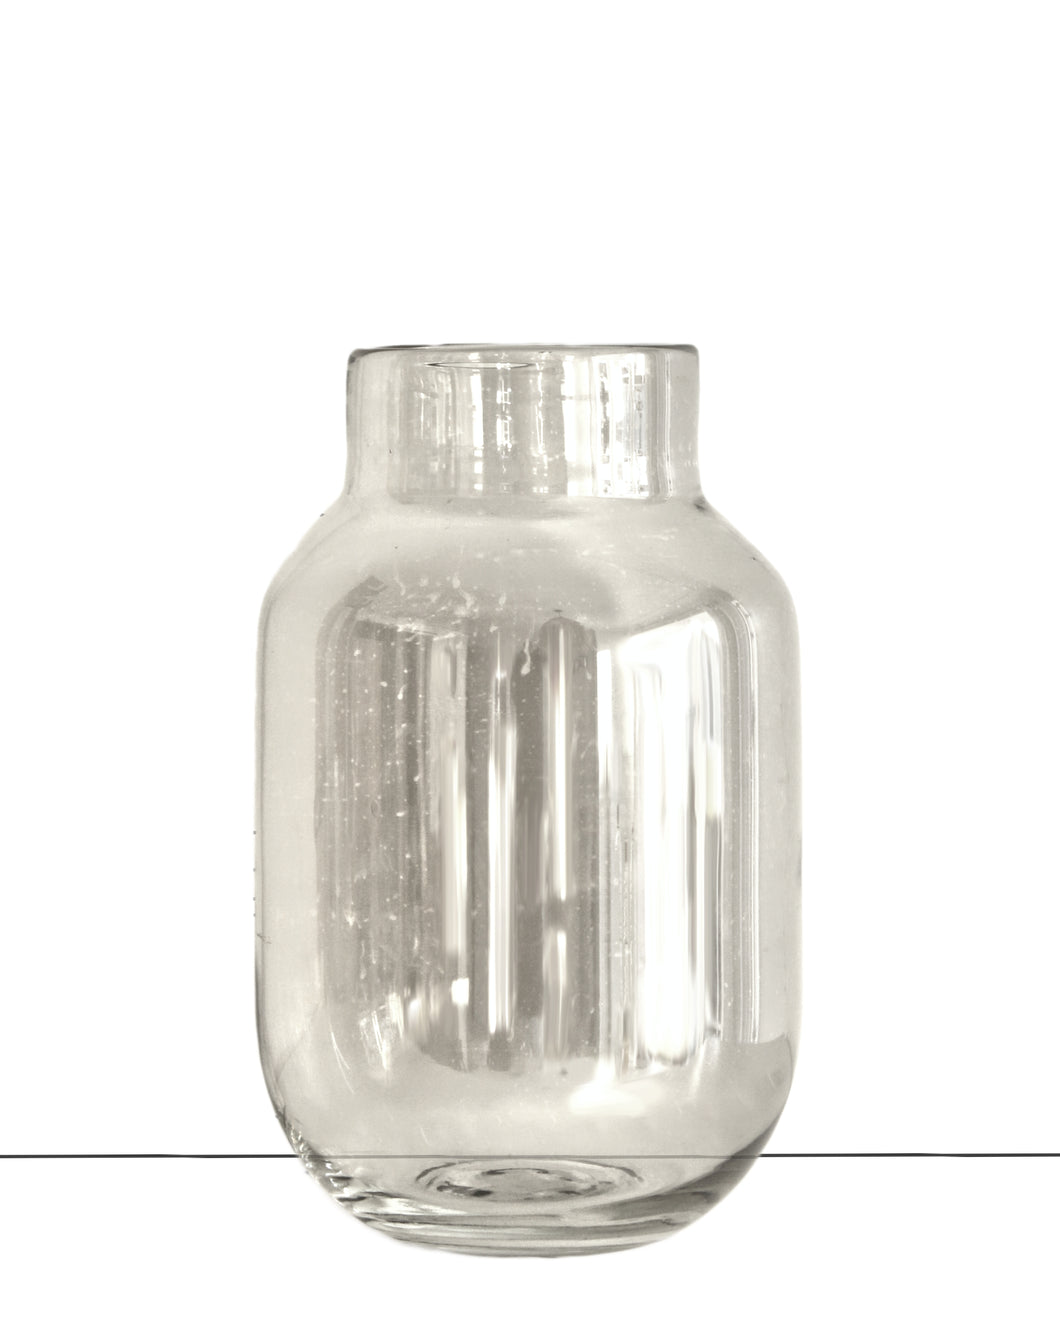 Stilvolle Glas Vase in hellgrau mit leichter Perlmuttoptik, Höhe 28 cm, Durchmesser 18 cm